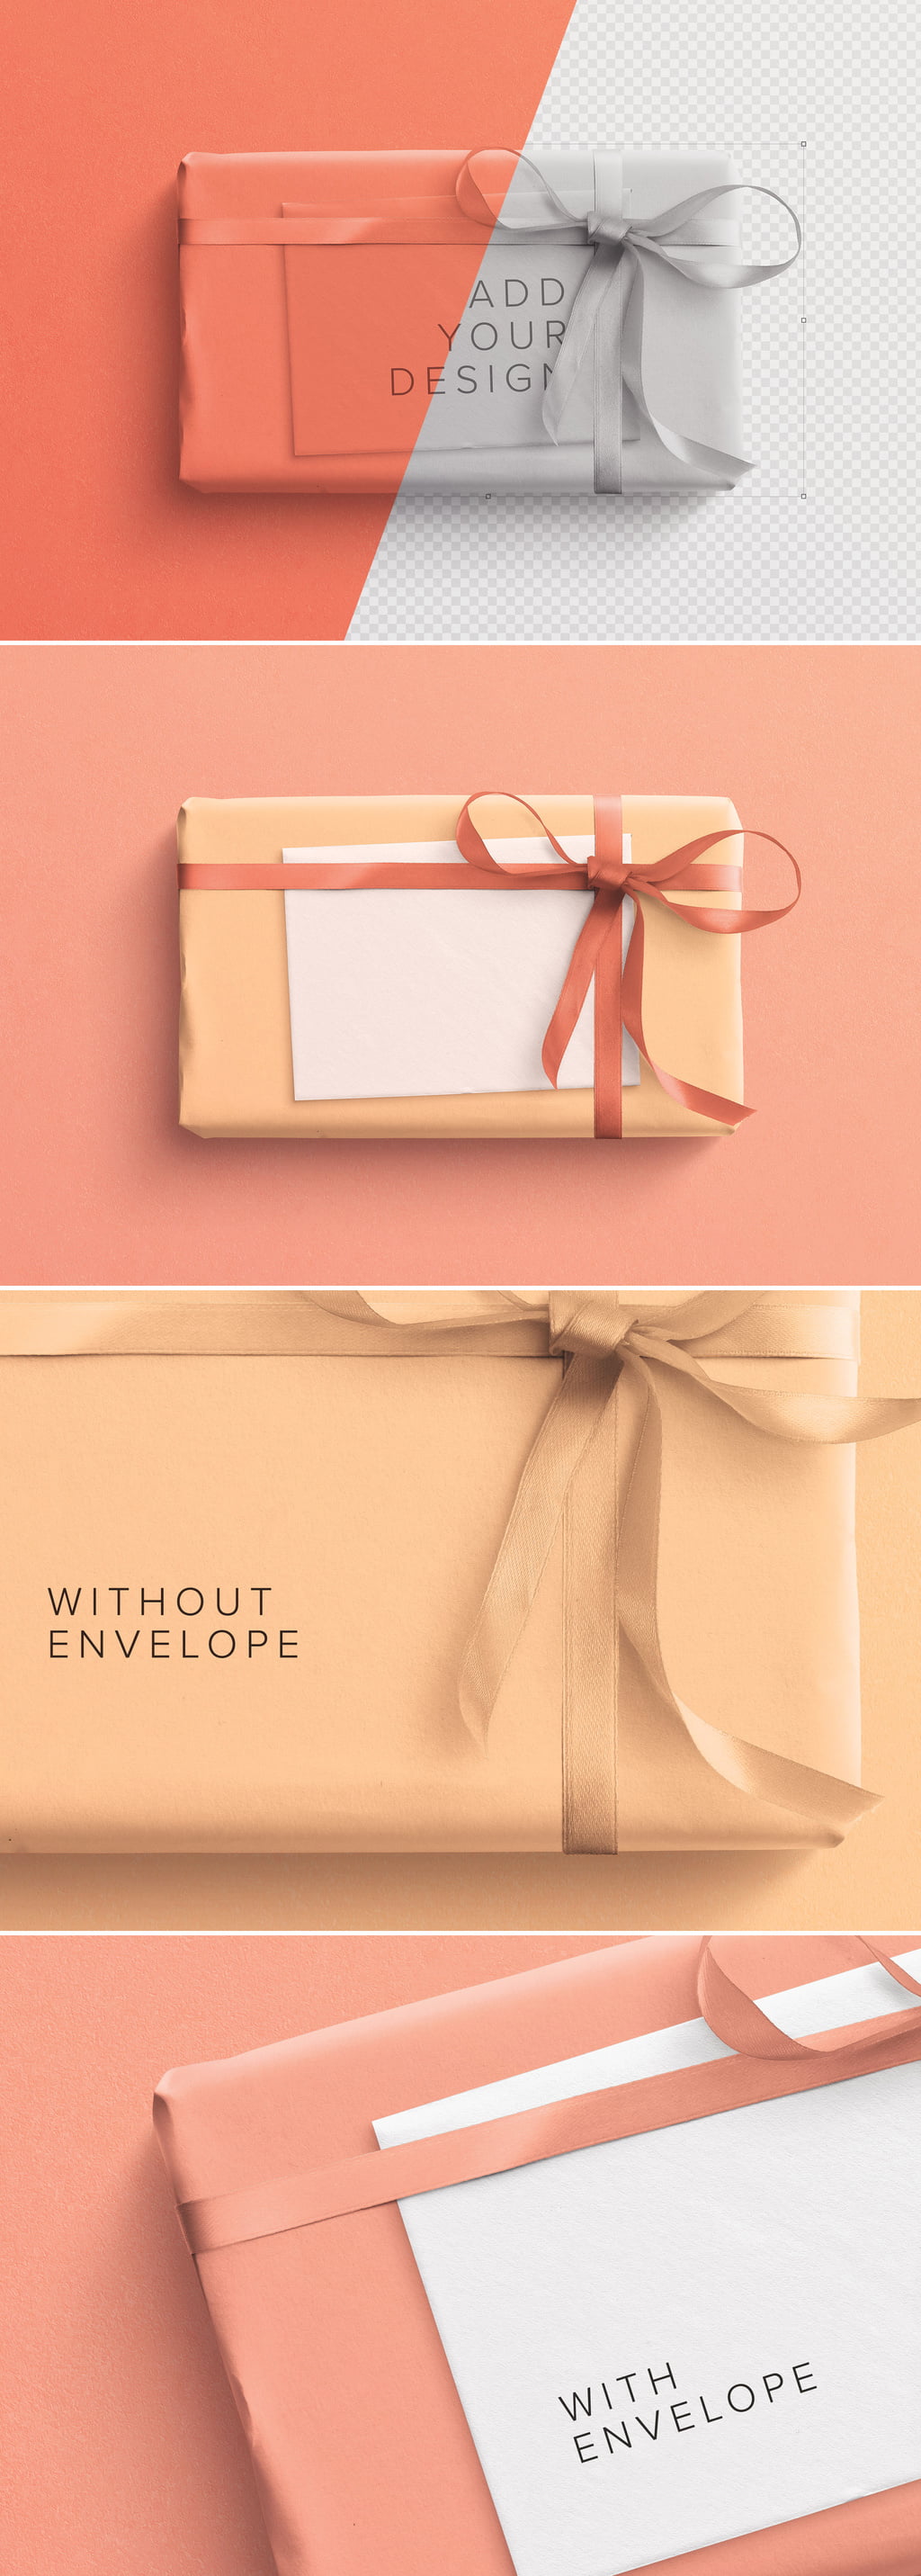 دانلود Wrapped Gift Box and Envelope Mockup - موکاپ جعبه هدیه